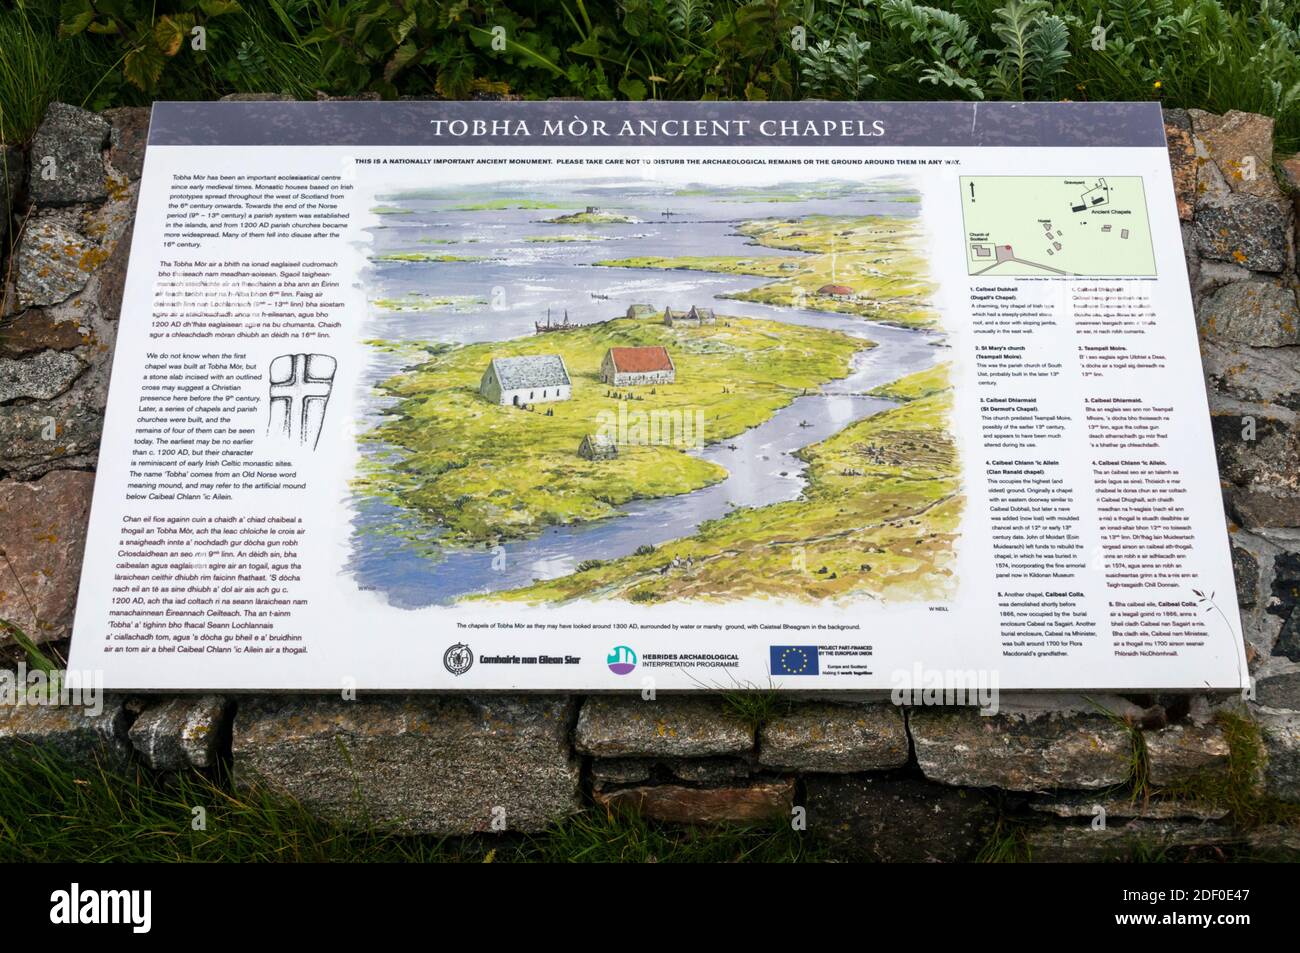 Un panel de información sobre las antiguas capillas de Tobha Mor en Uist del Sur en las Hébridas Exteriores. Foto de stock